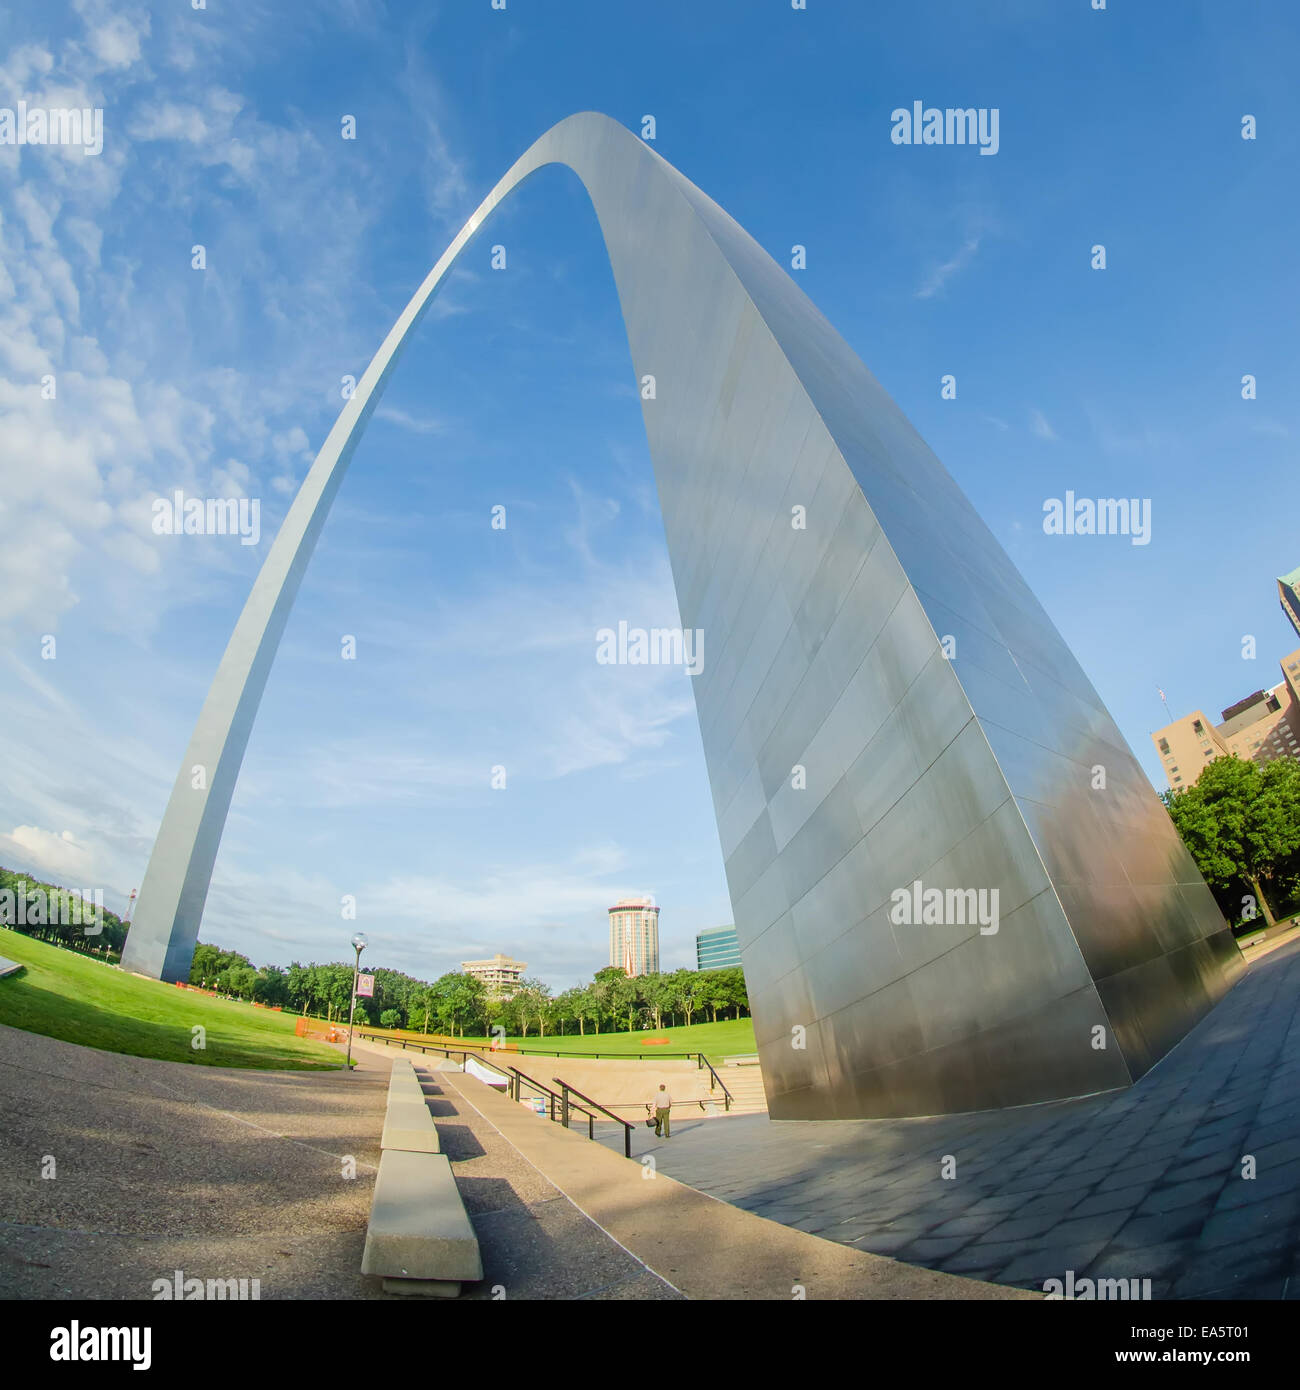 gateway arch sculpture in St Louis Missouri Stock Photo